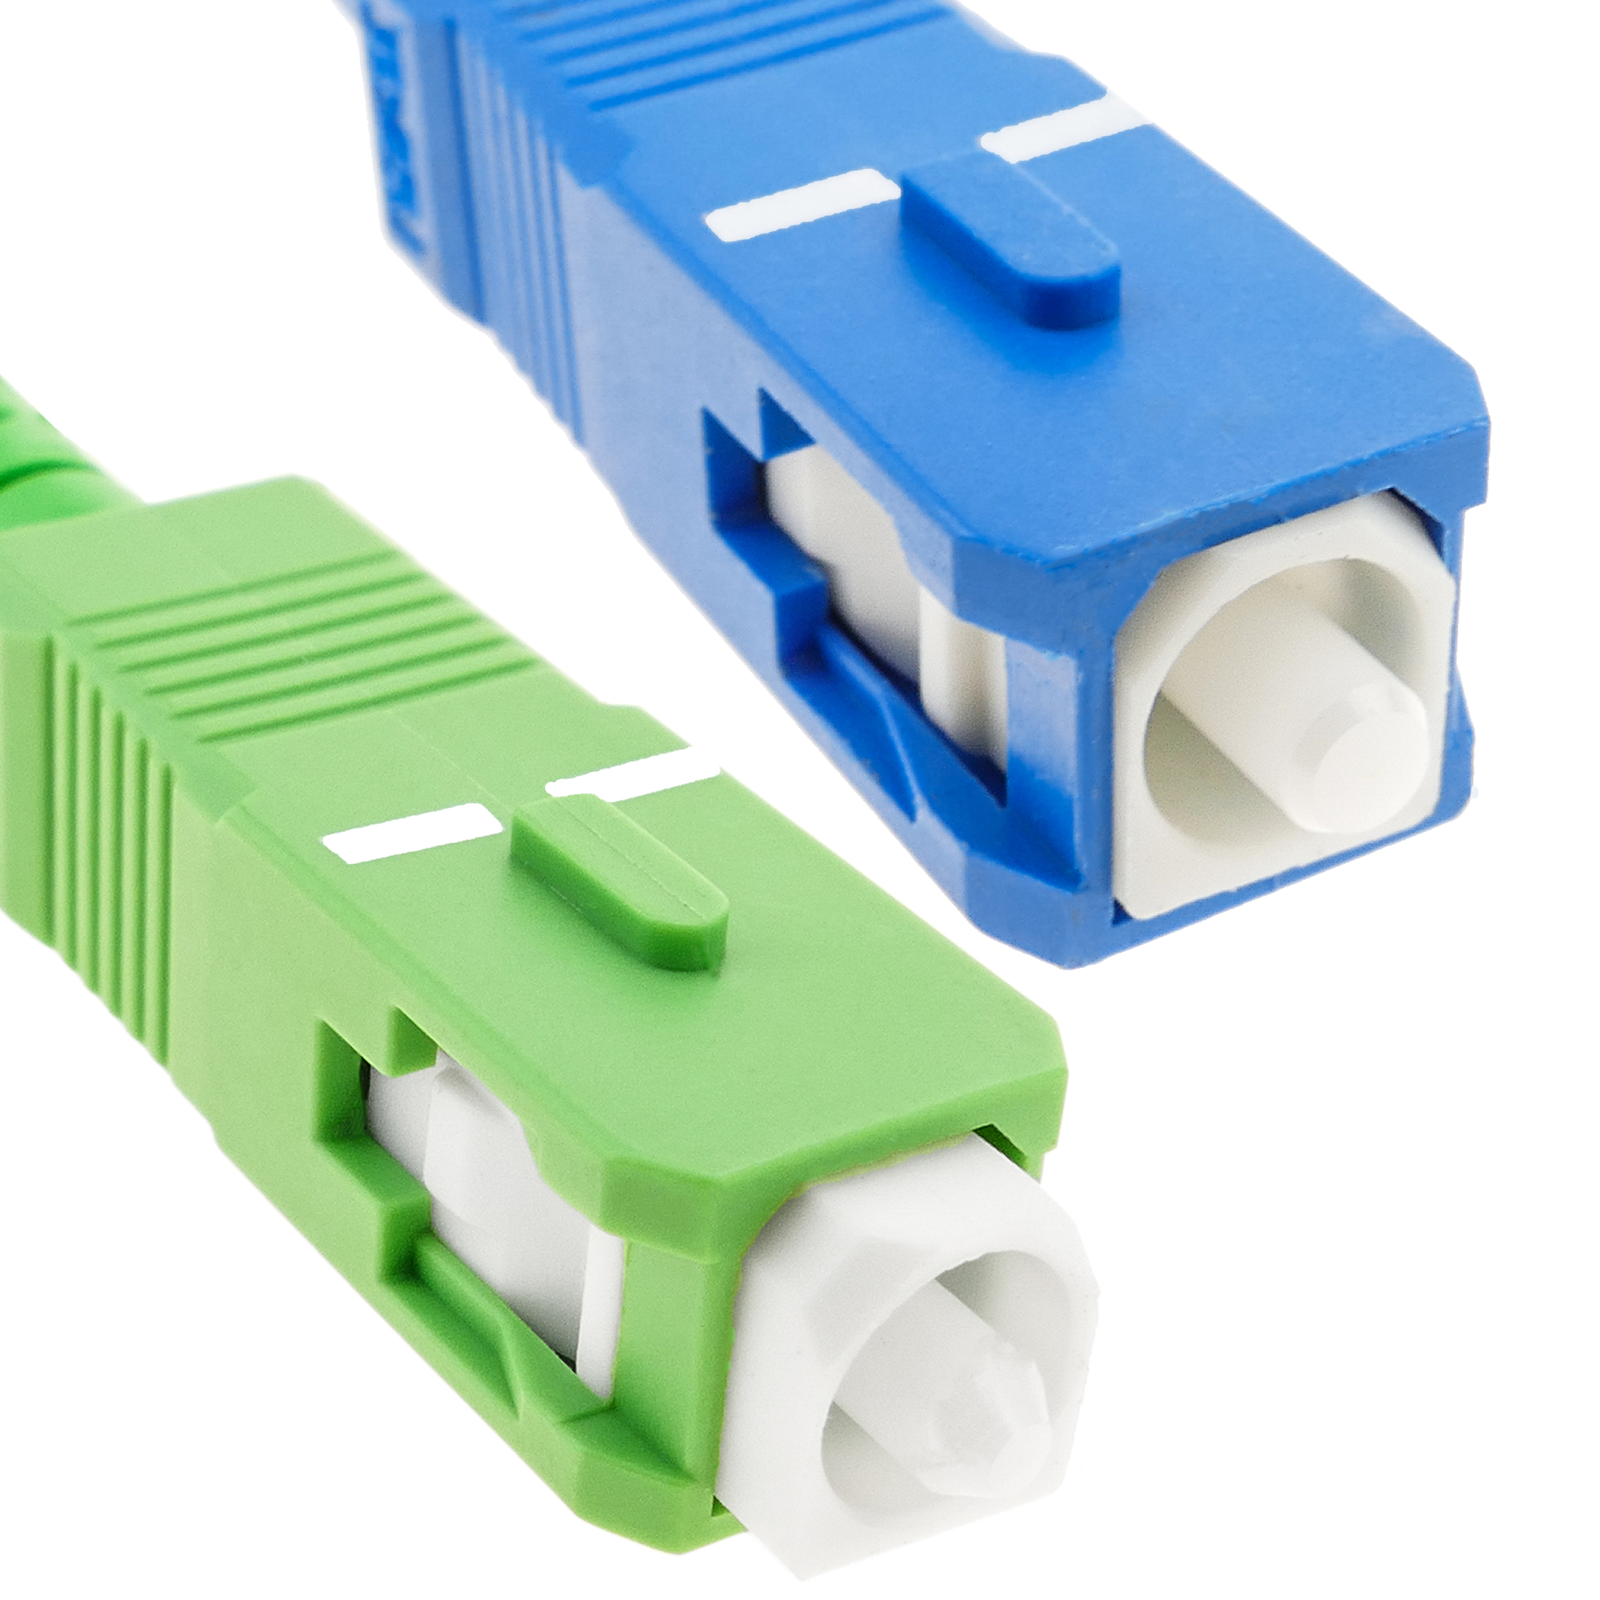 BeMatik Cable de Fibra óptica SC/APC a SC/APC monomodo simplex 9/125 de 2 m OS2 Blanco